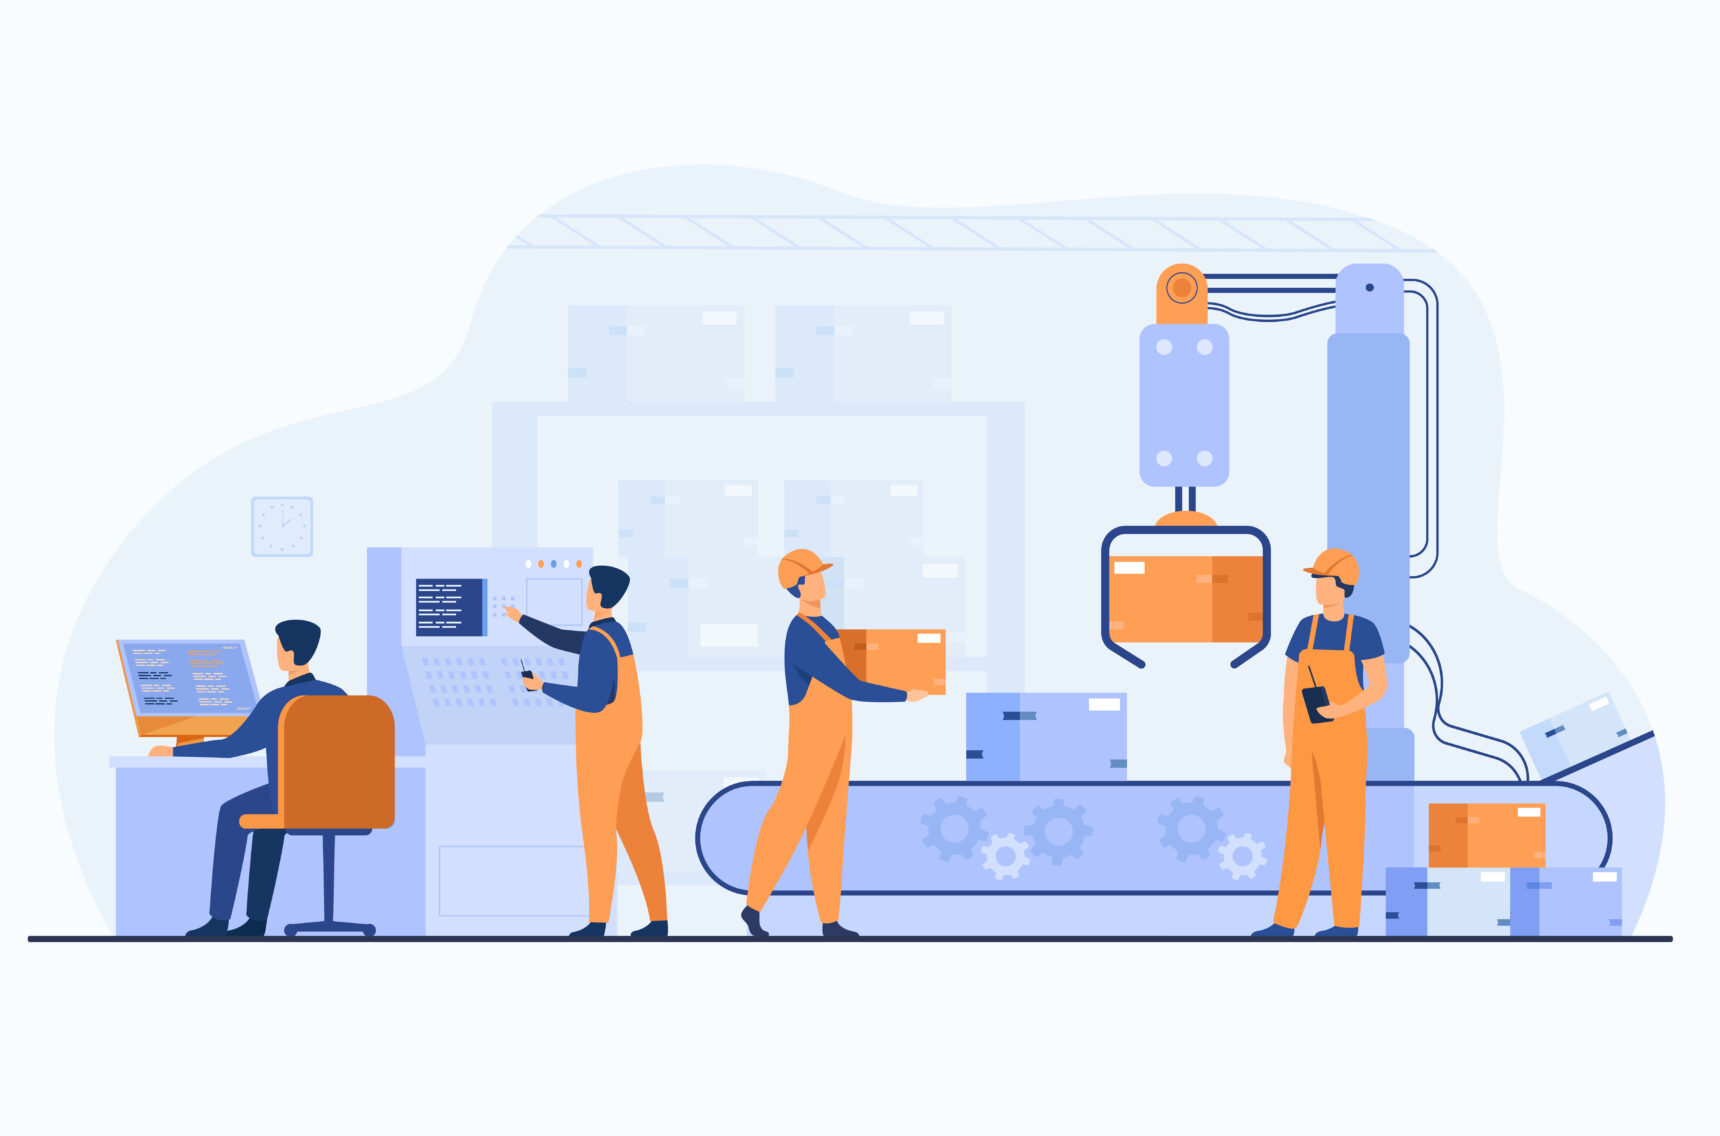 Illustration von Fabrikarbeitern, die Pakete vom Förderband entfernen, Consulting für die digitale Transformation